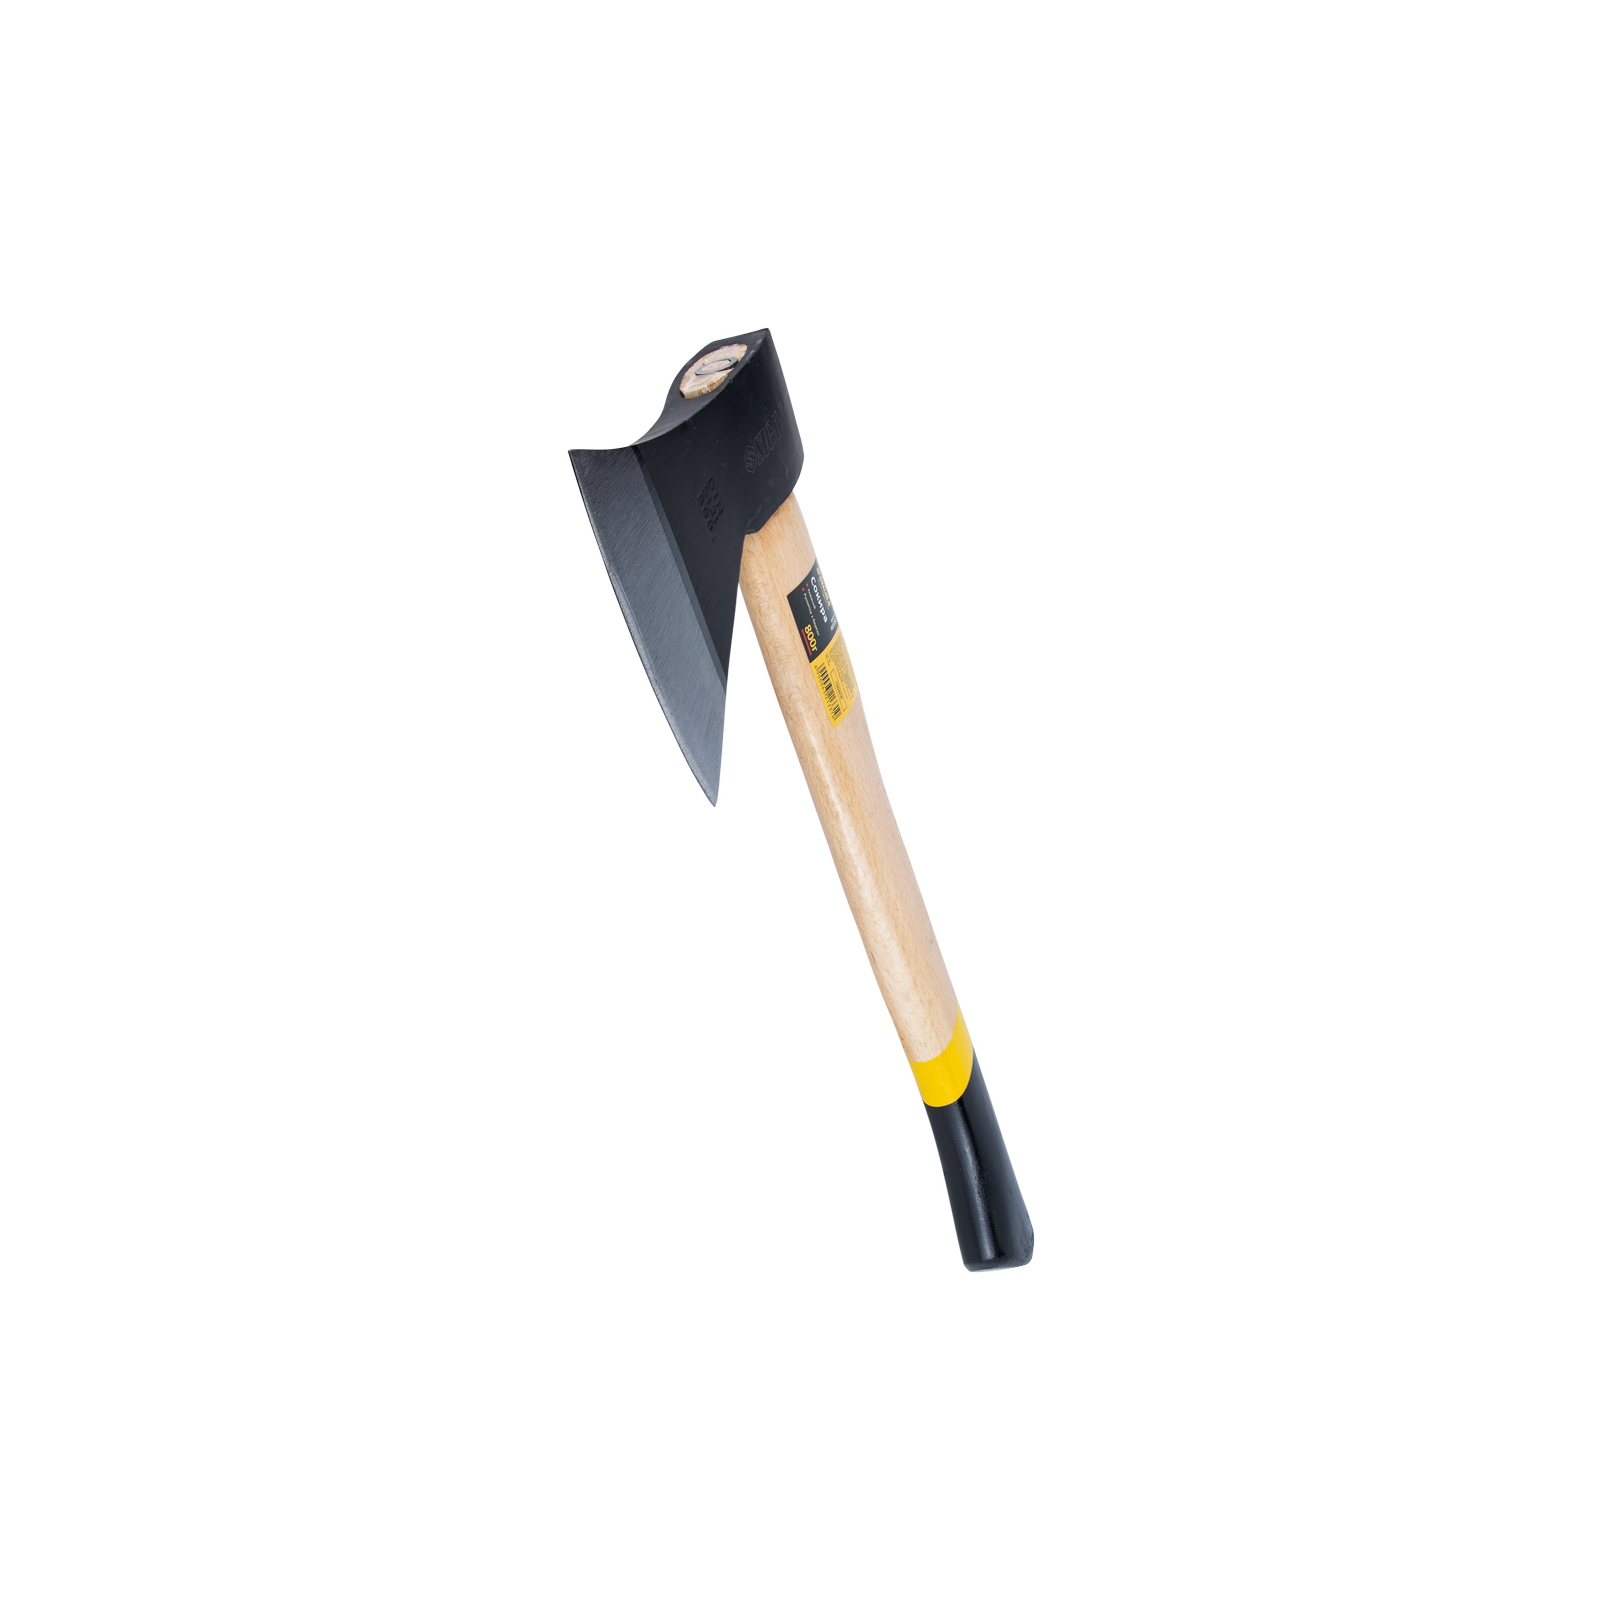 Сокира Sigma 800г дерев'яна ручка (береза) (4321331) зображення 4